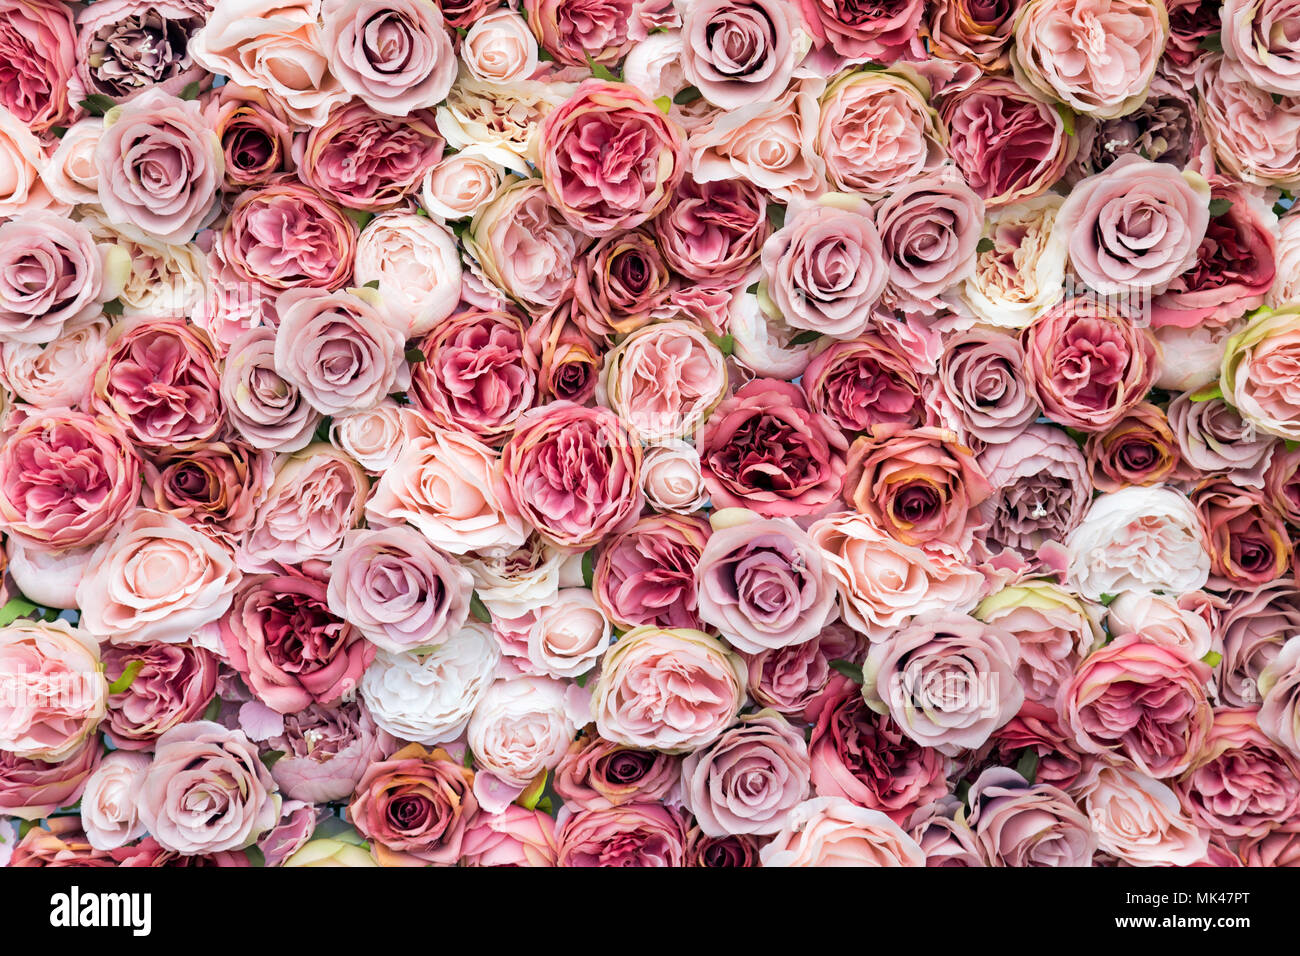 Mur de roses dans différentes nuances de rose background Banque D'Images